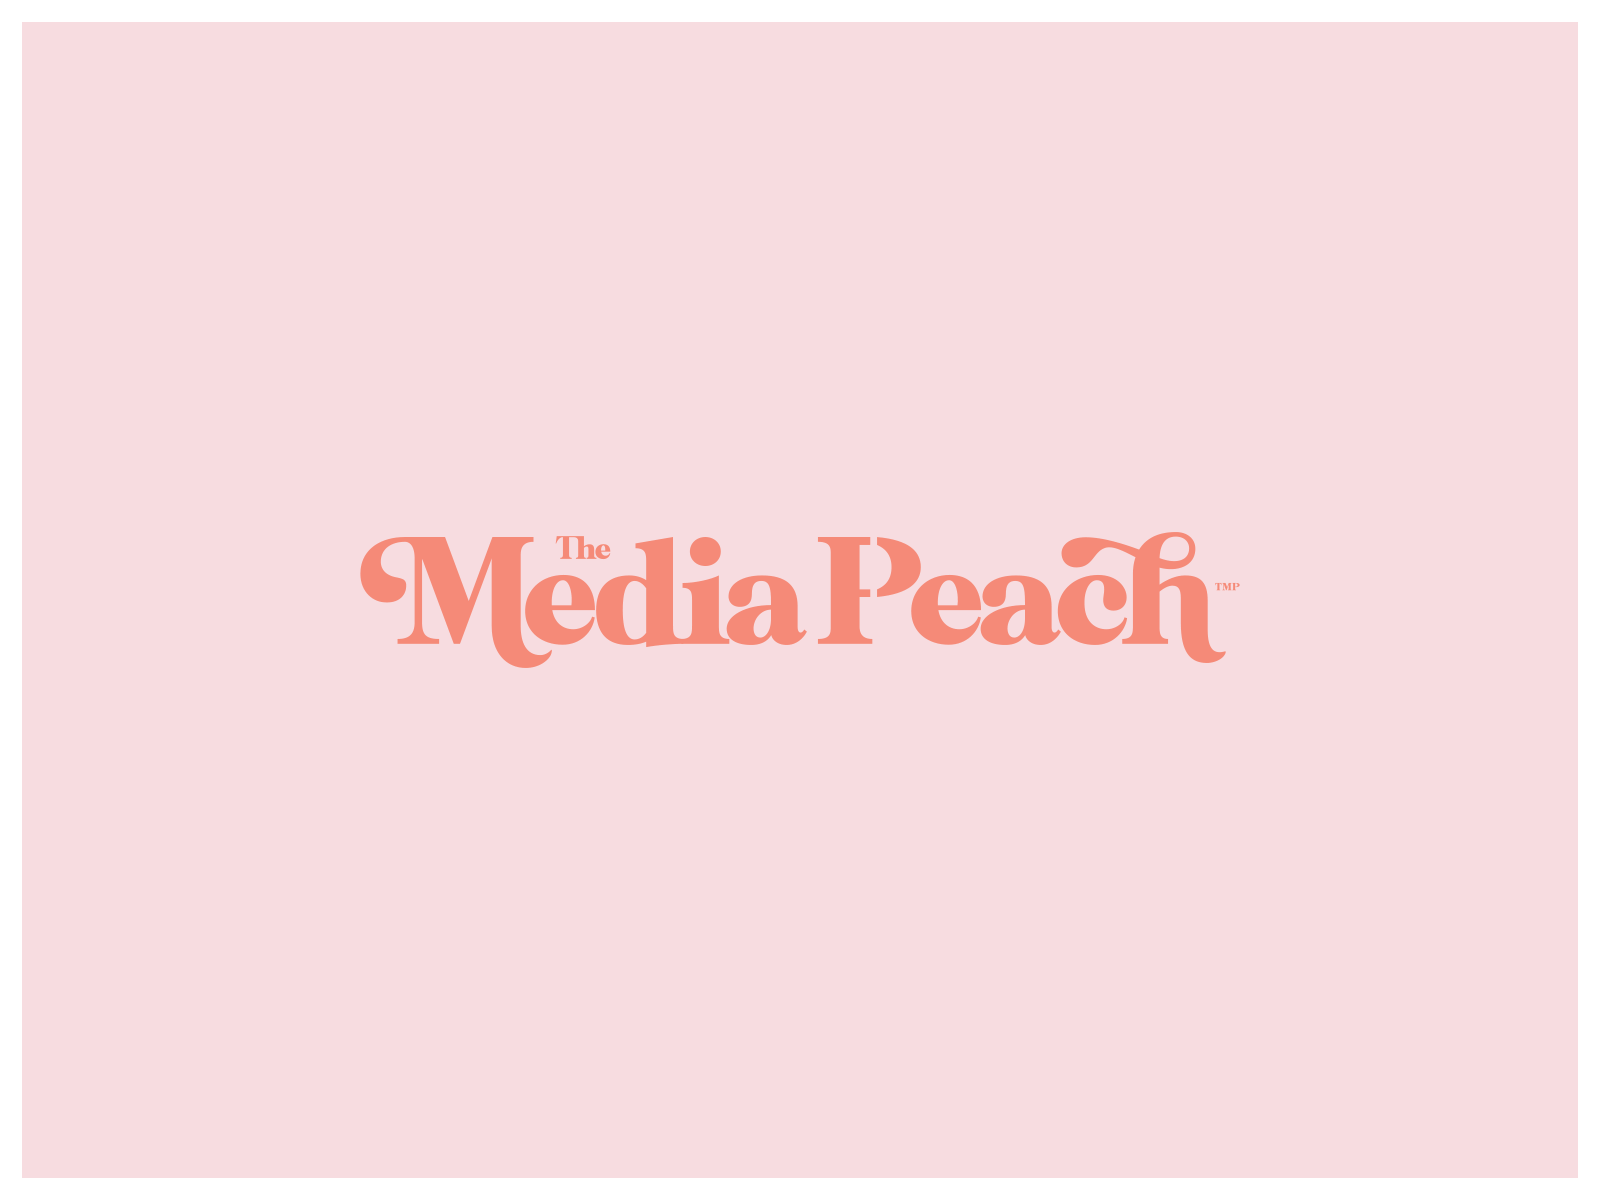 The Media Peach